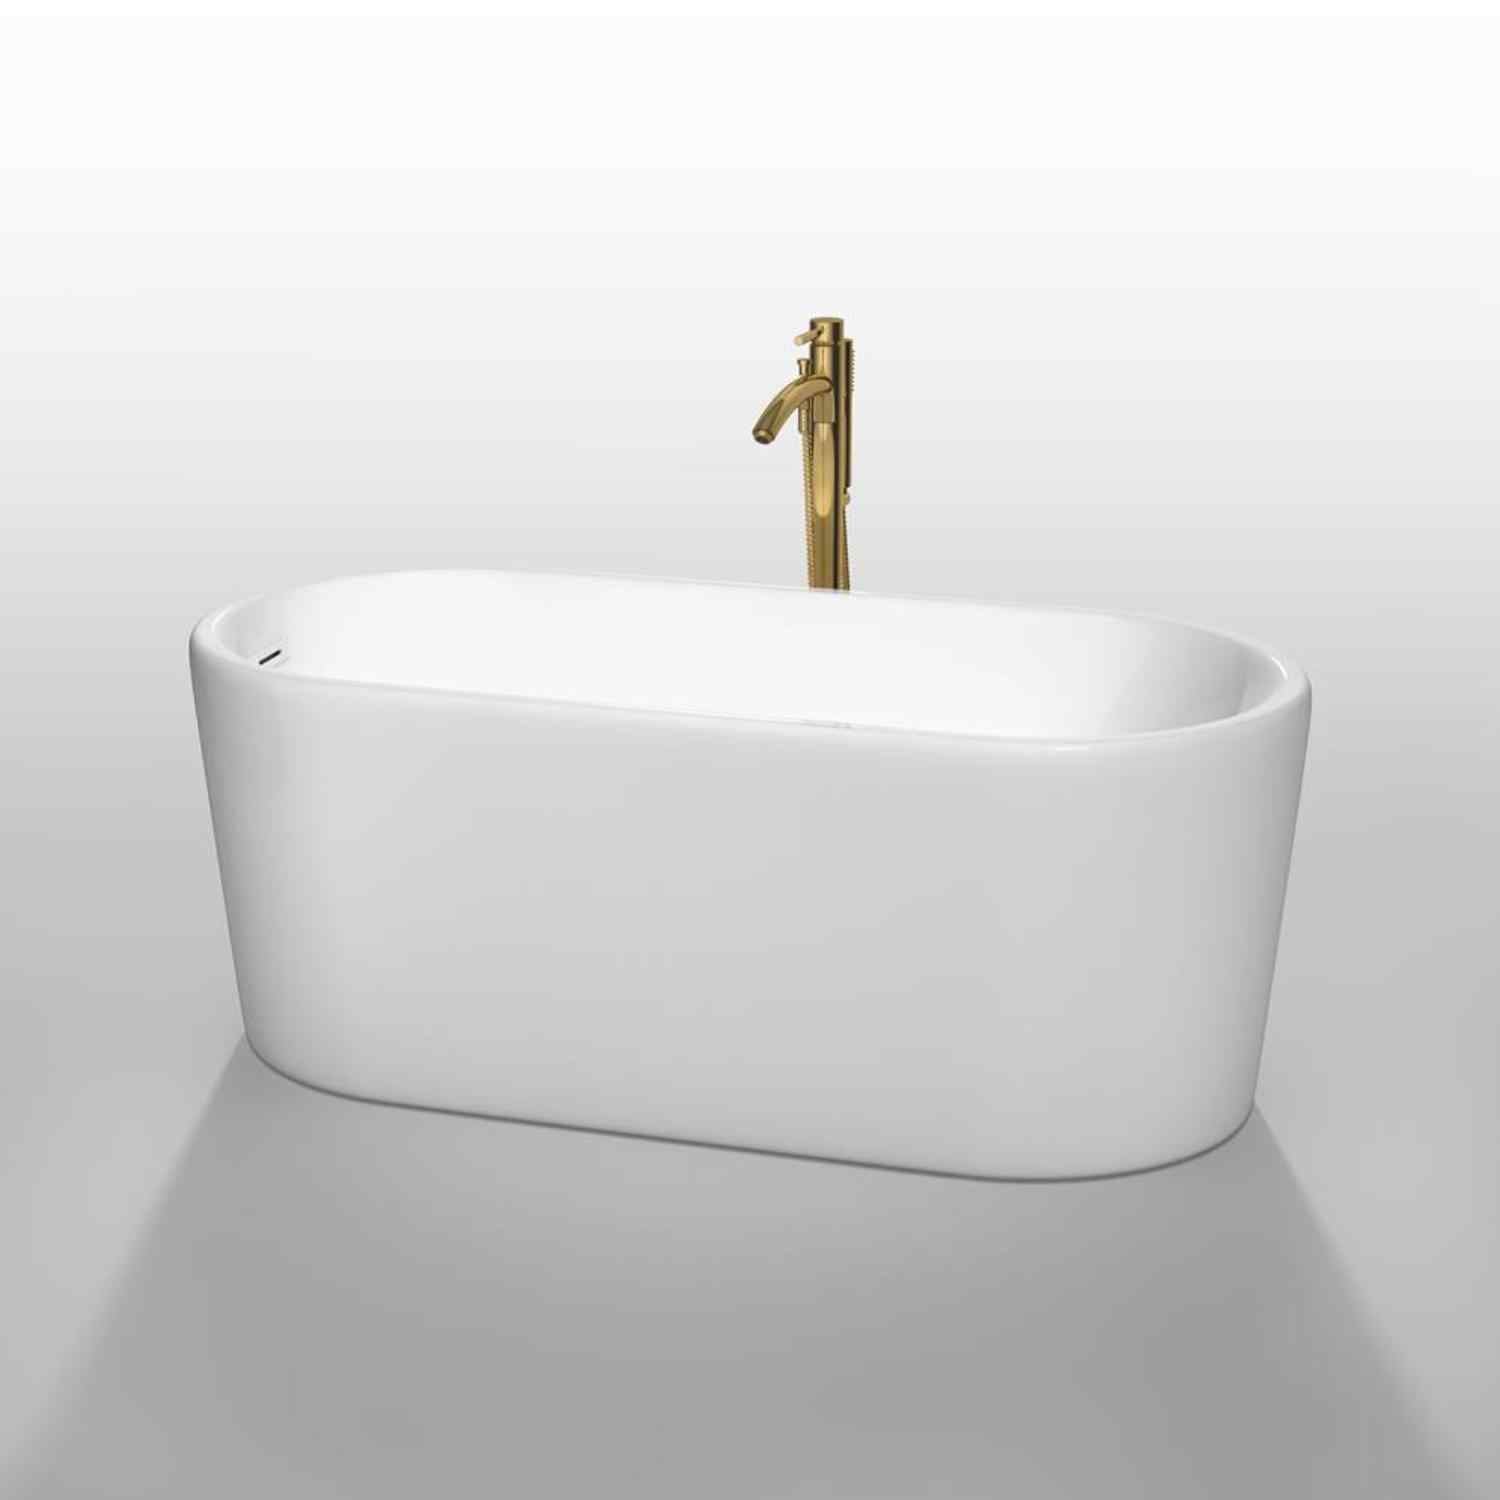 Wyndham collection Ursula 59 Inch Freestanding Bathtub in White golden 